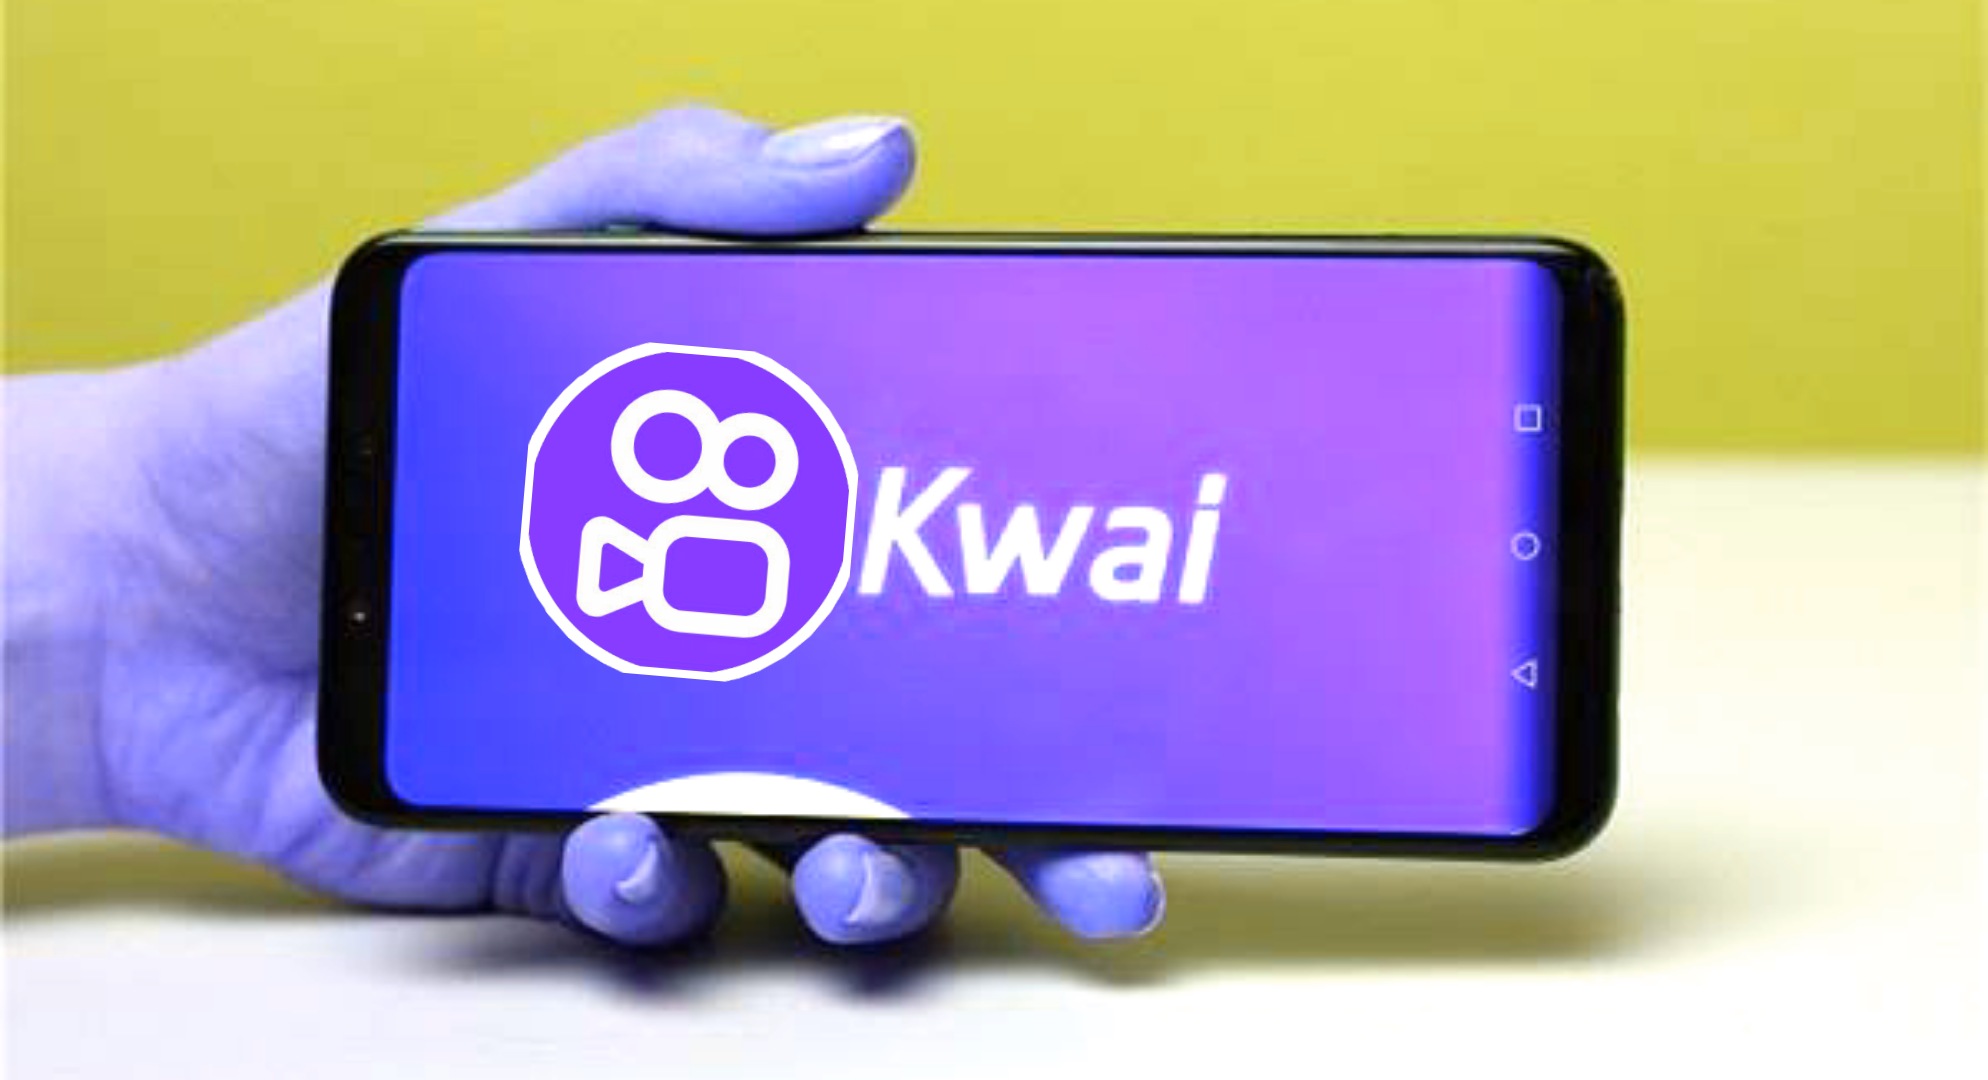 تنزيل تطبيق كواي kwai الاصلي